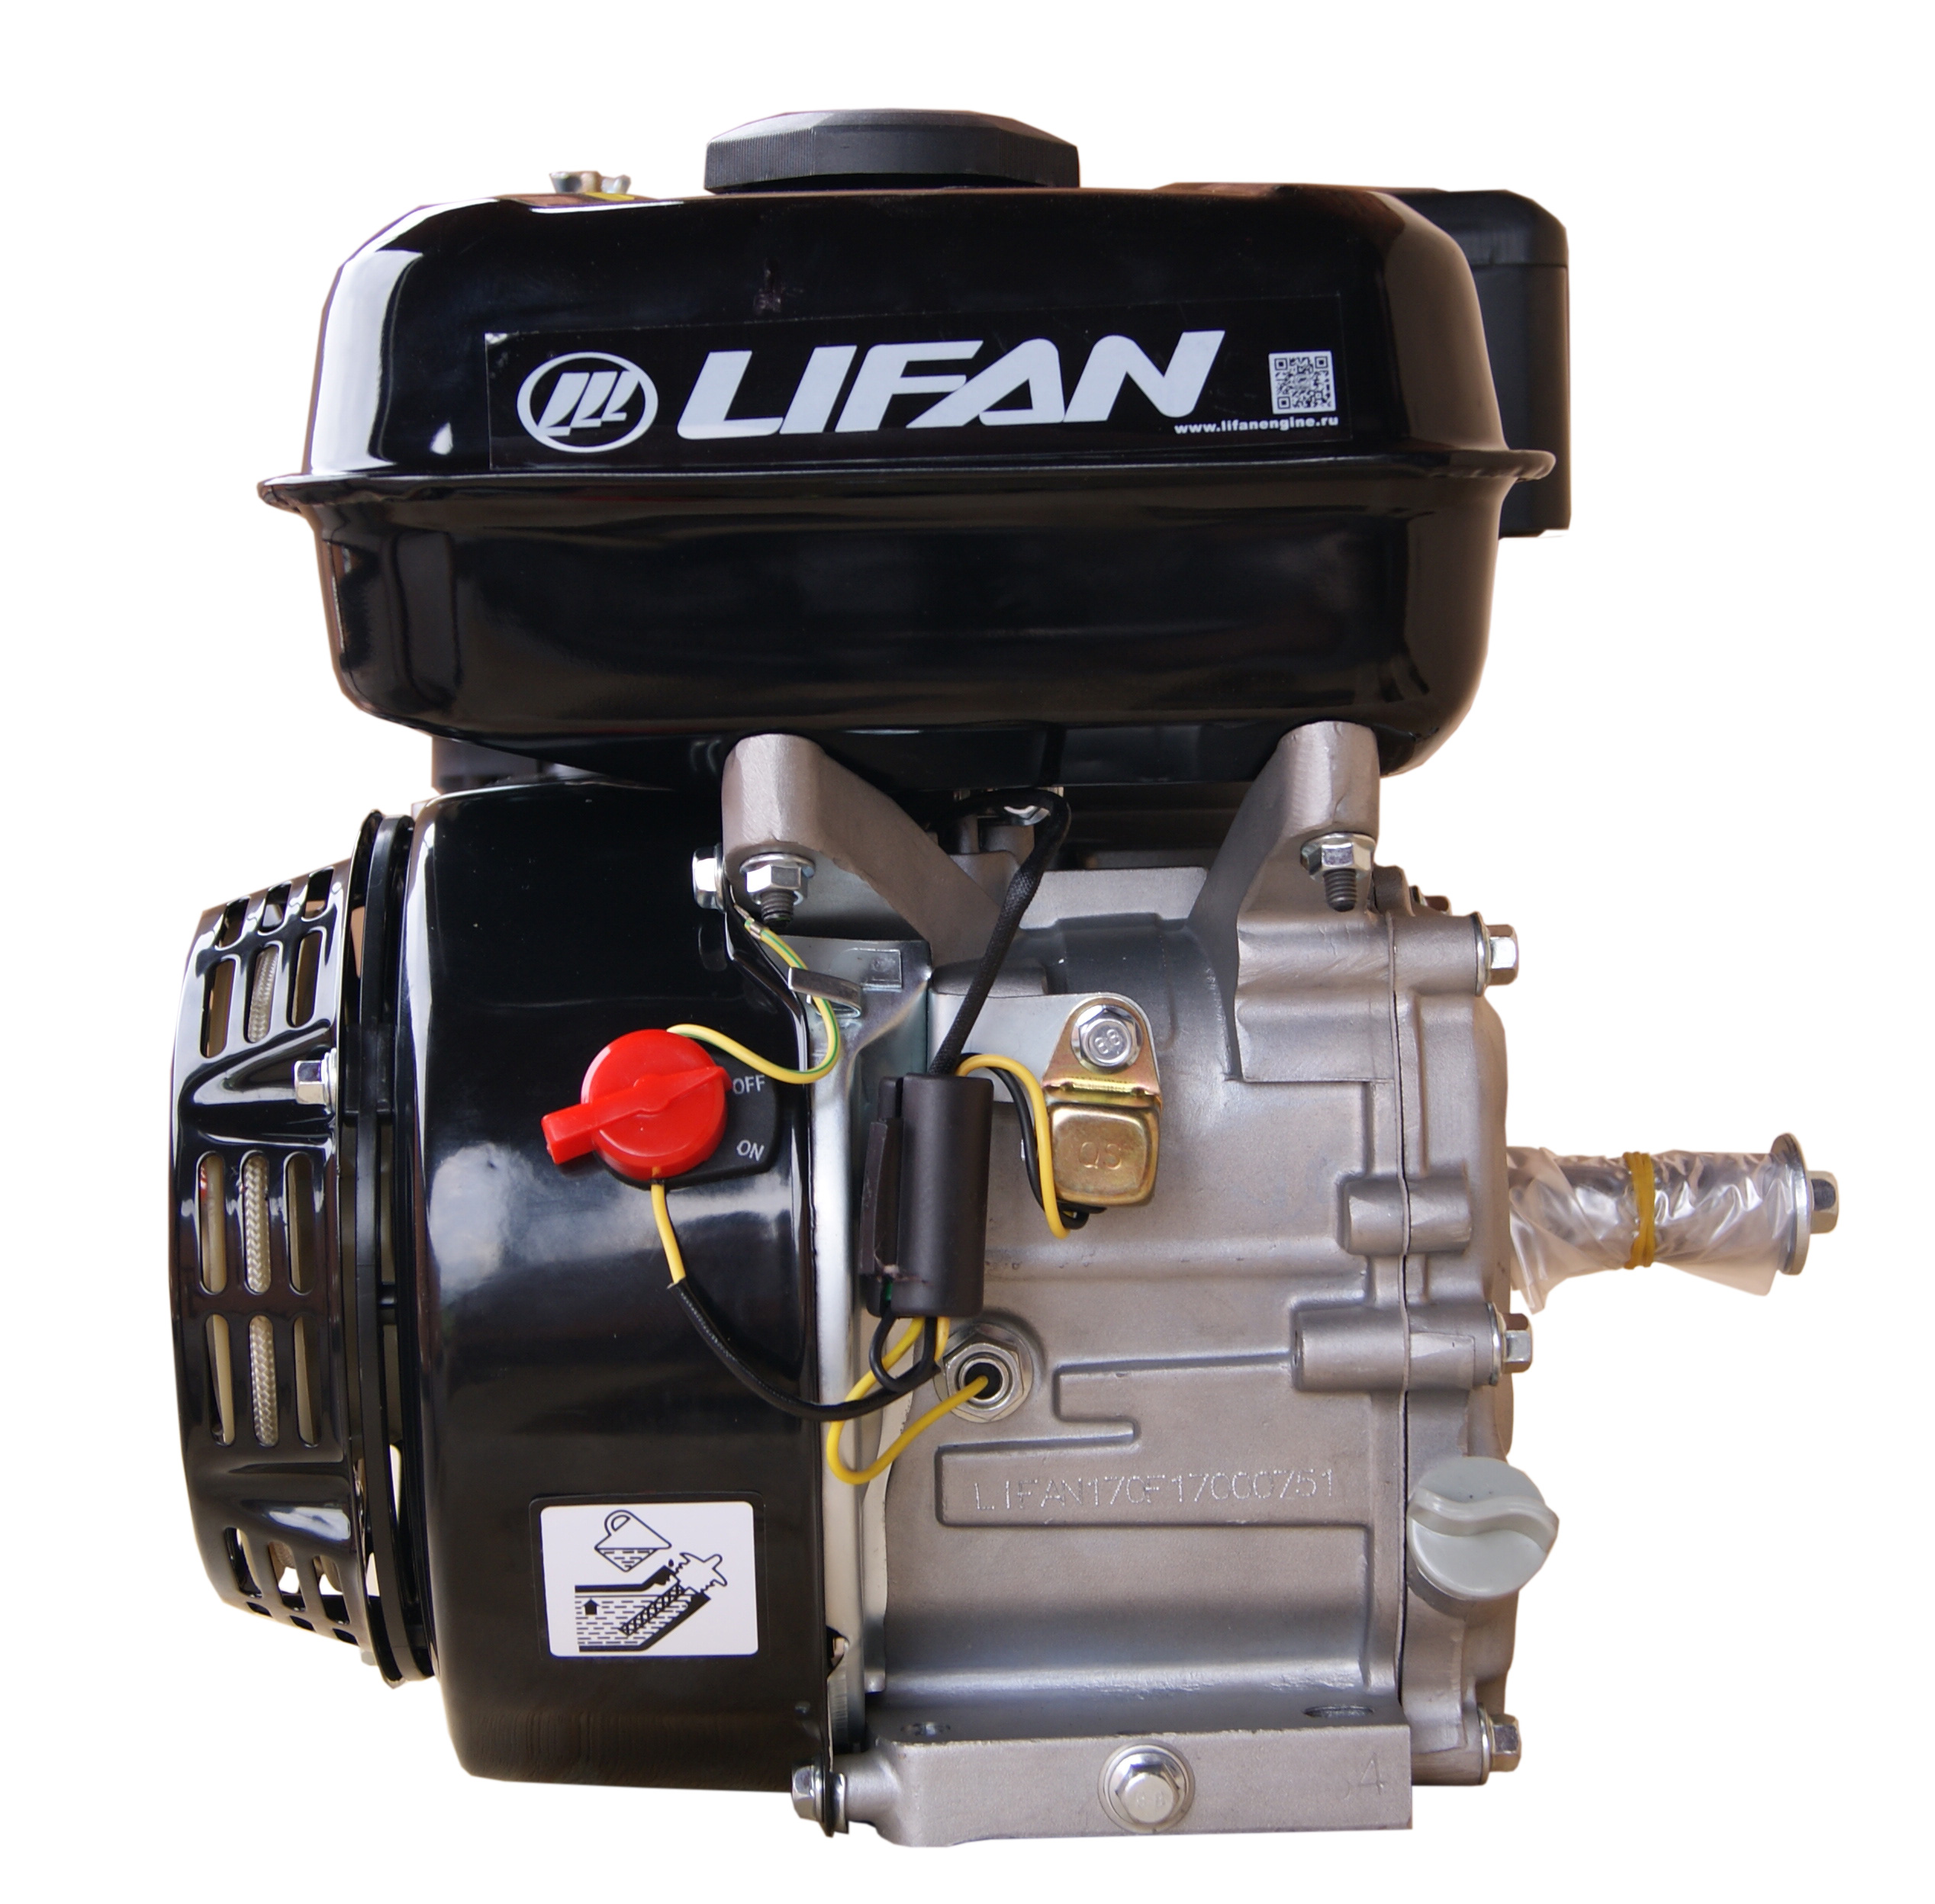 Купить двигатель лифан 9. Двигатель Lifan 6,5 л.с. 168f-2. Lifan 170f. Двигатель Lifan 170f. Двигатель Lifan 168f-2d.